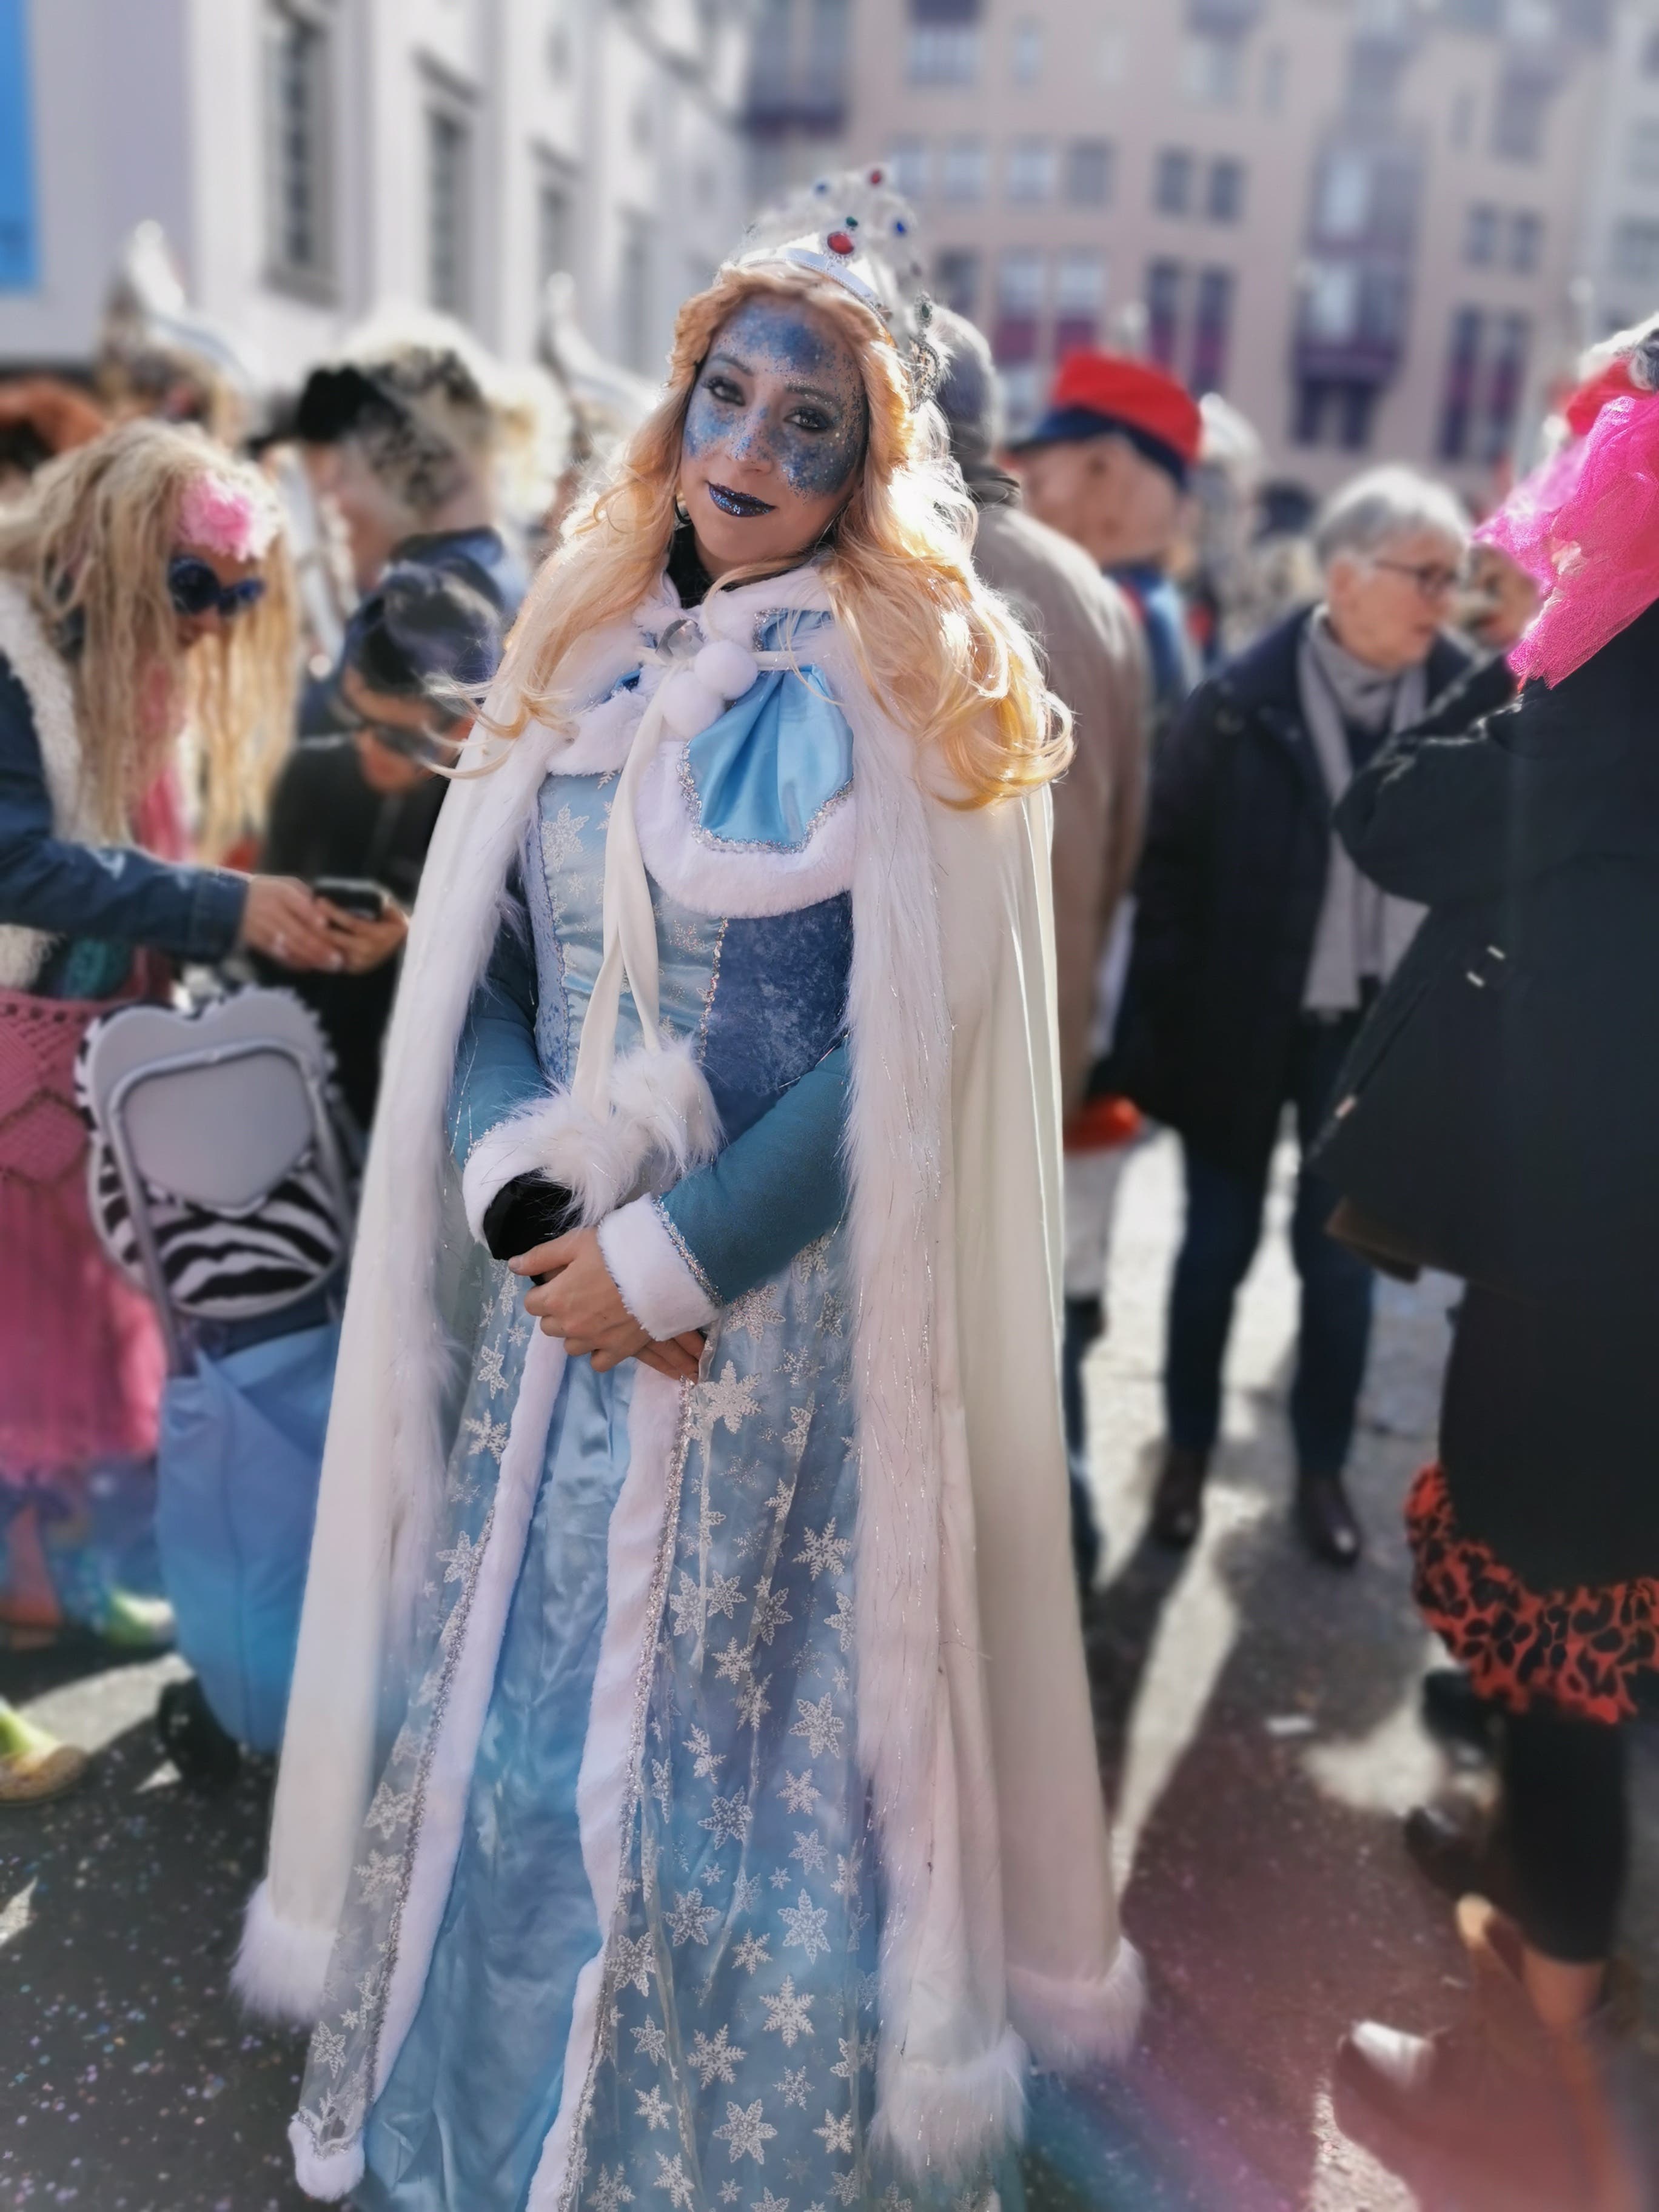 E rüüdigi, schöni Fasnacht als Elsa vo Frozen.